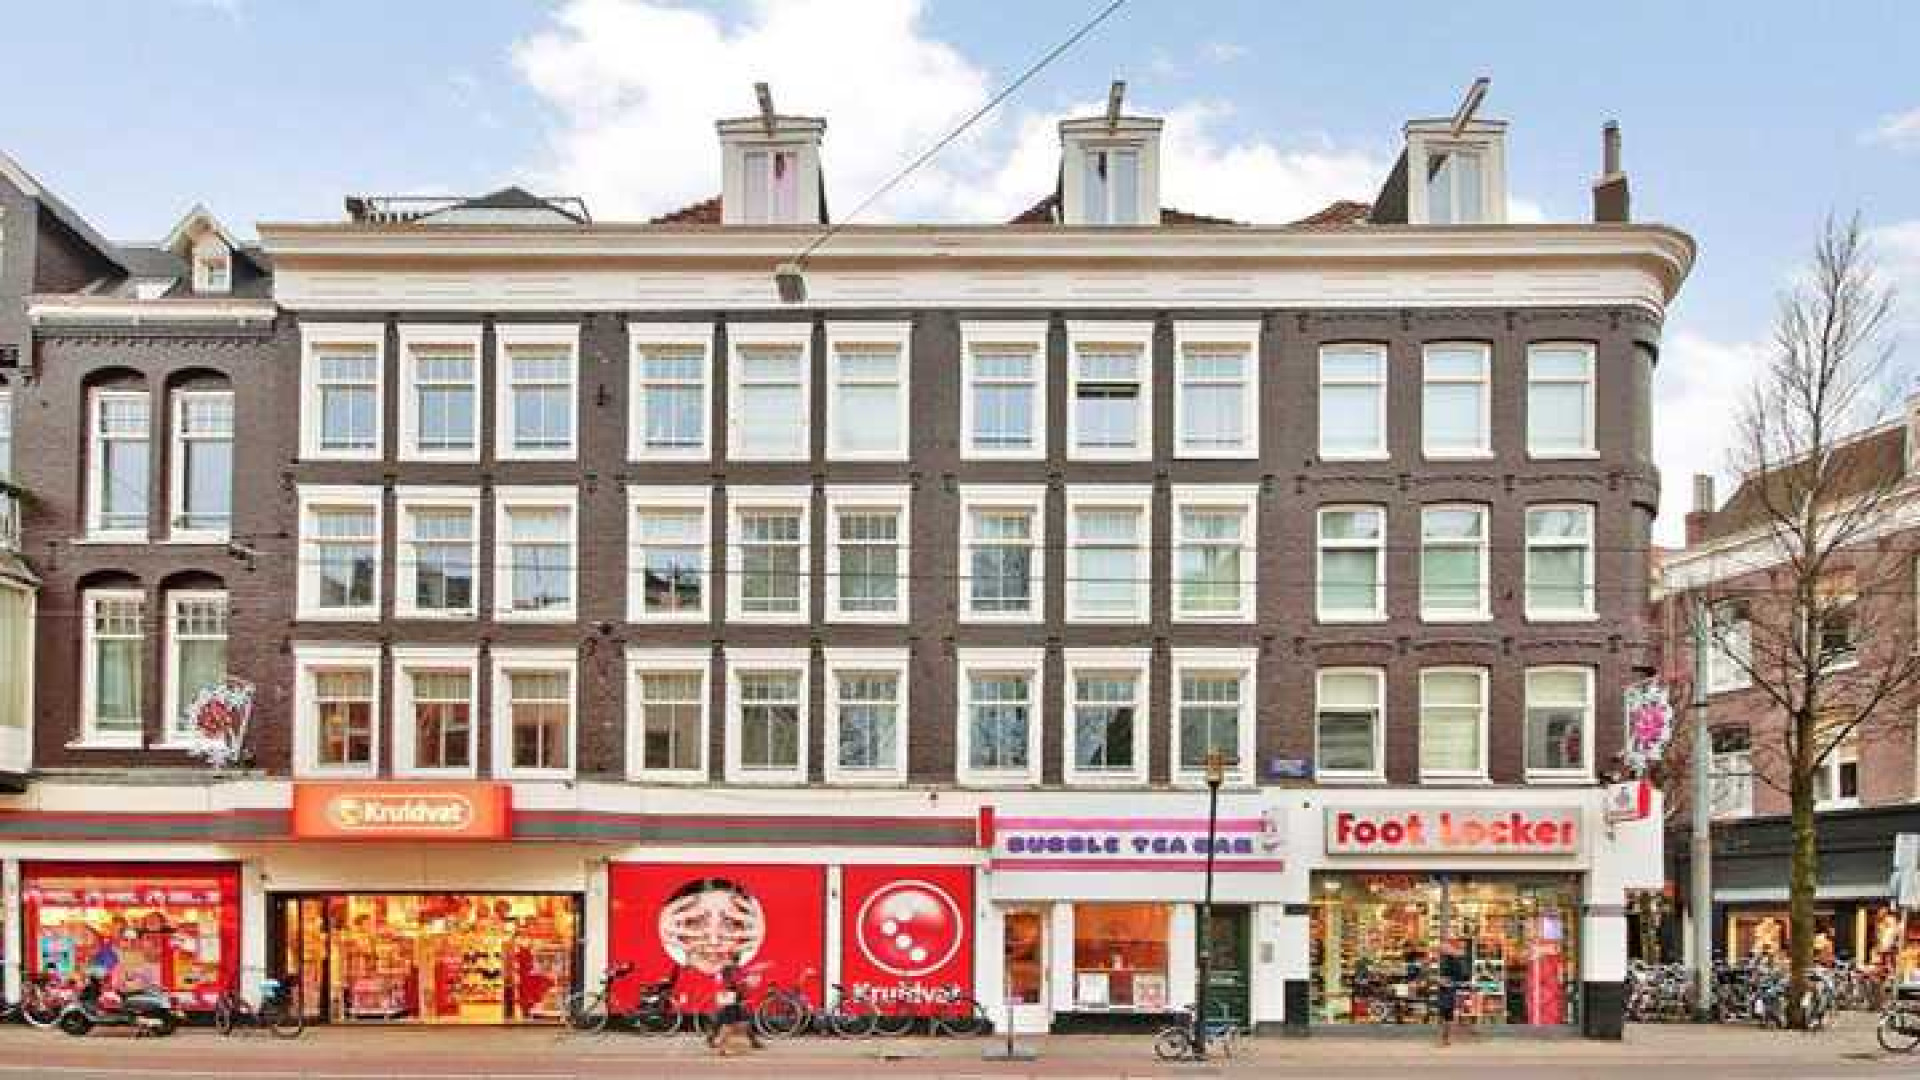 Gregory van der Wiel koopt appartement in populaire Amsterdamse stadsdeel  De Pijp! Zie foto's 1